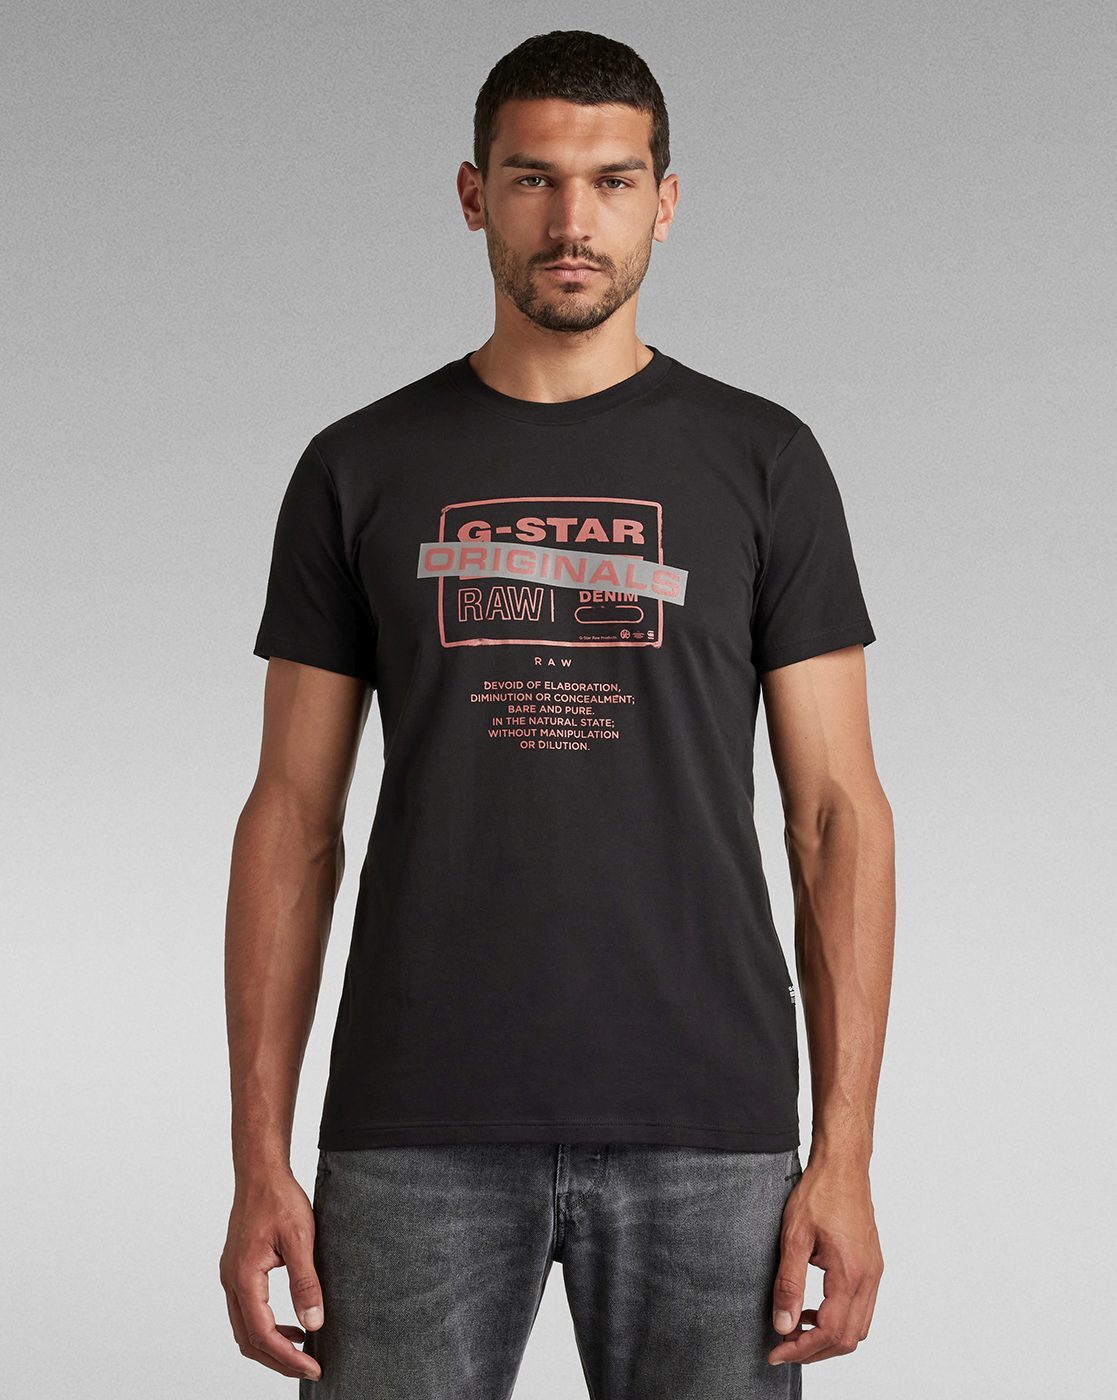 Buy Black Tshirts for Men G STAR RAW Online | Ajio.com